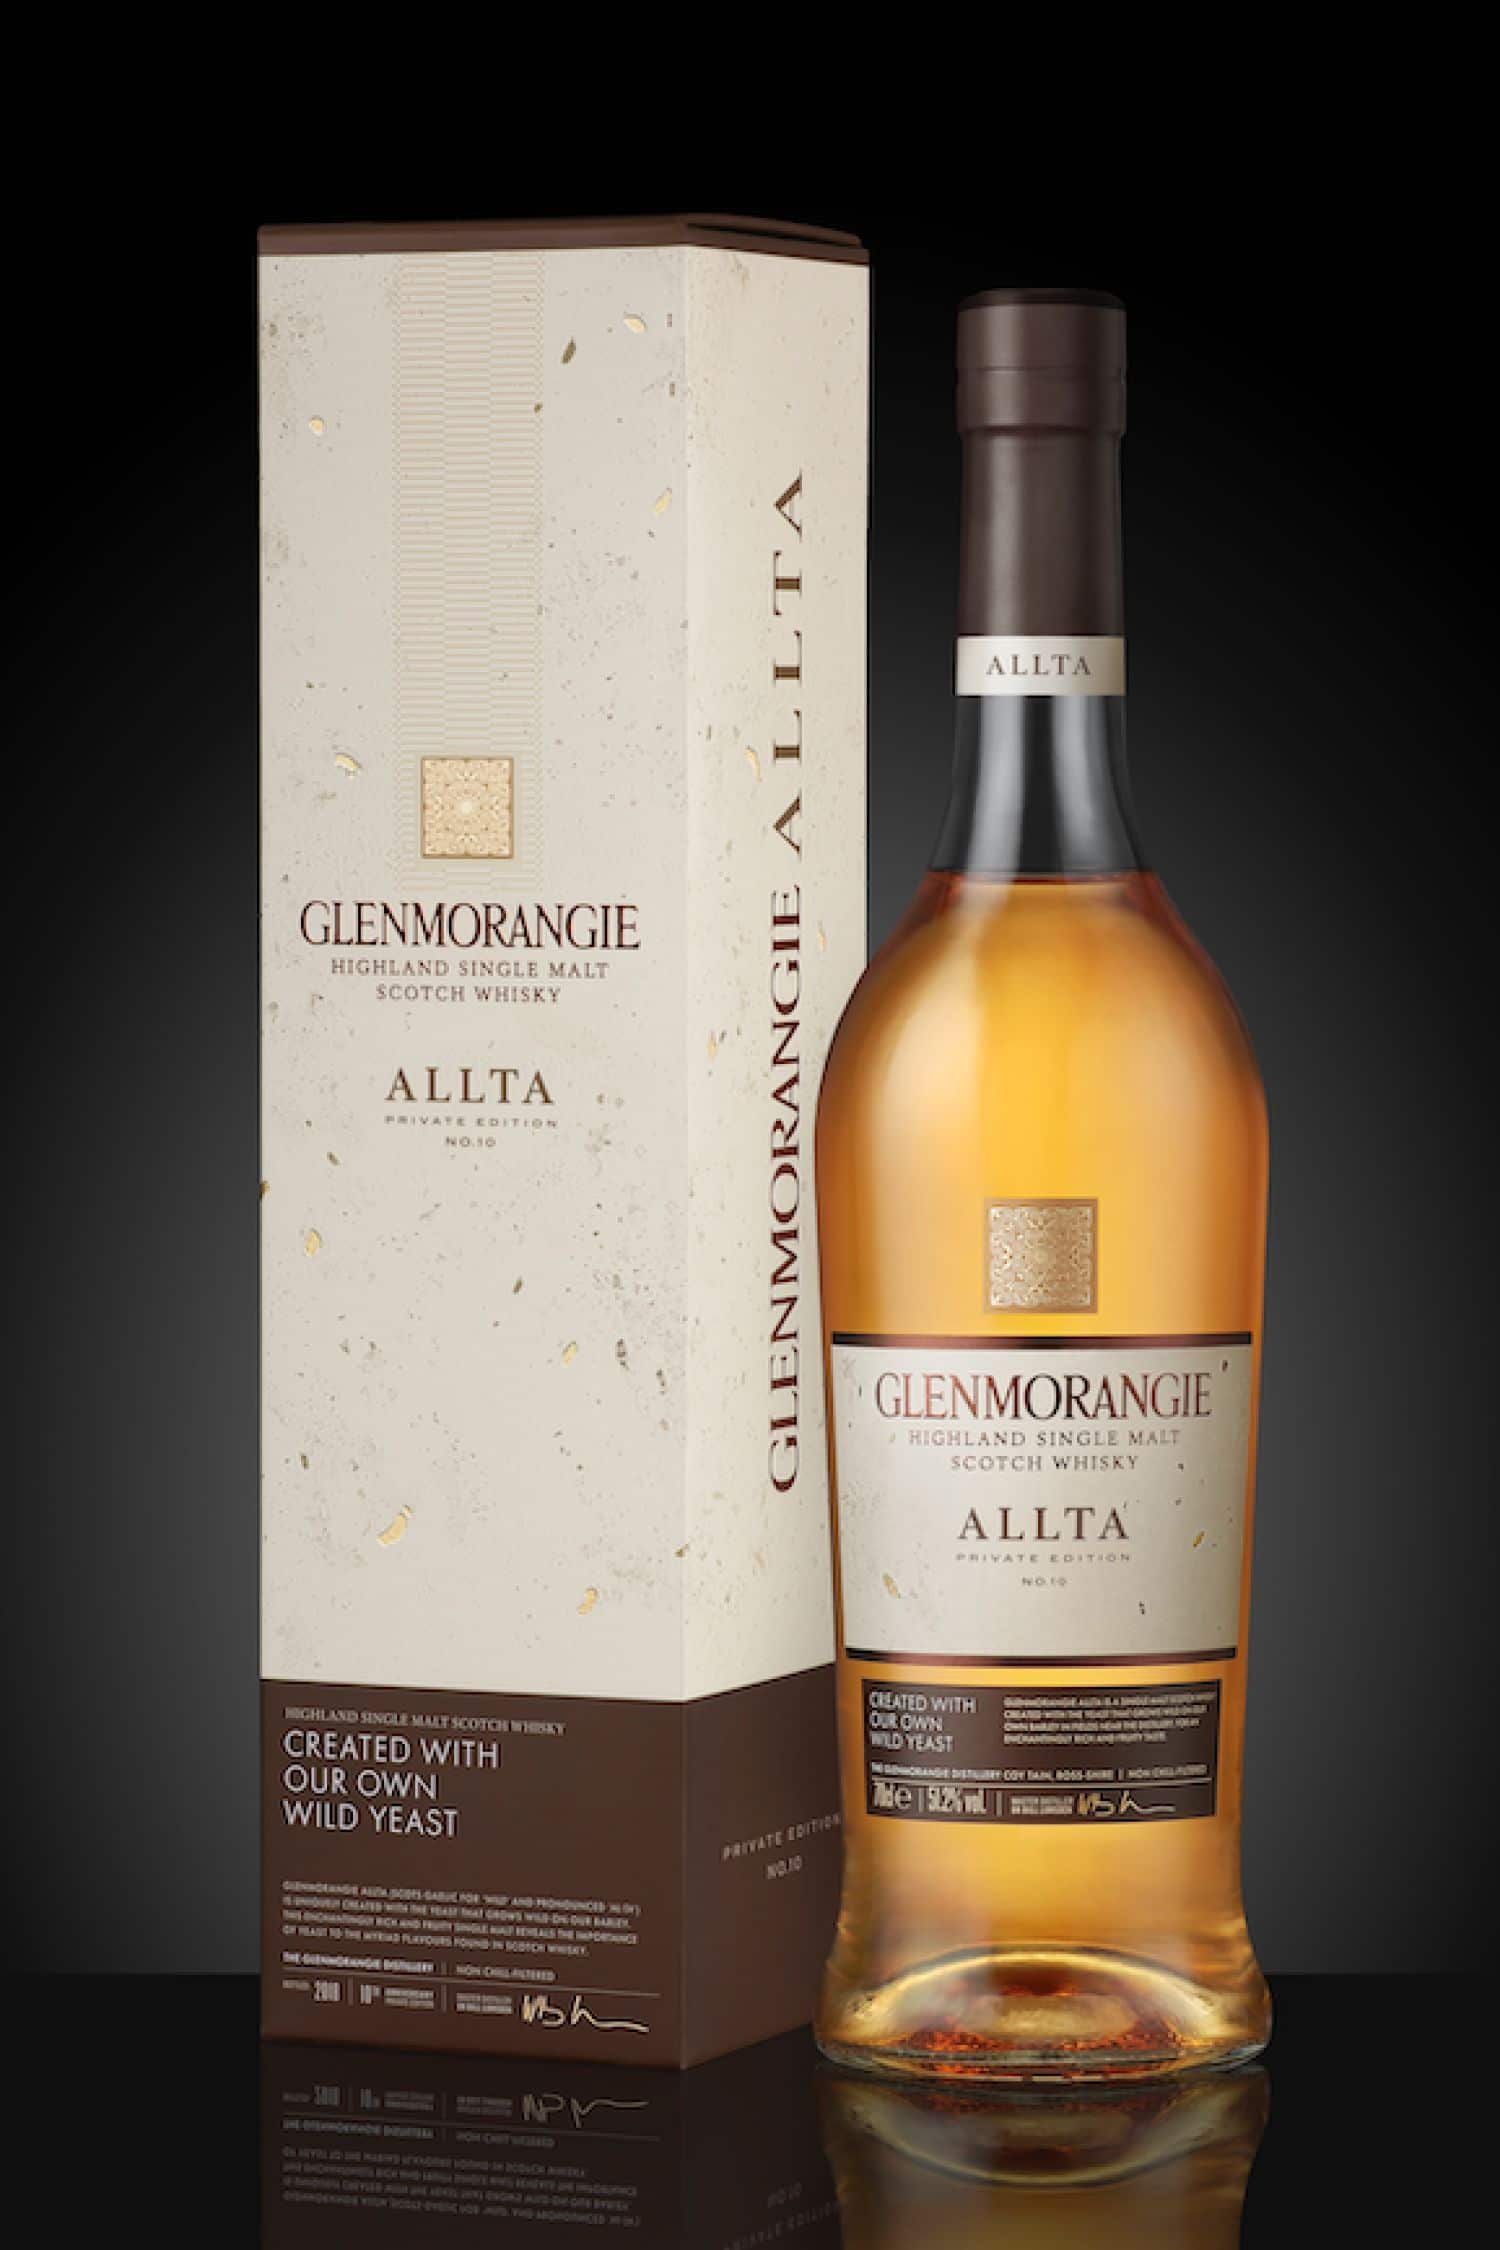 Glenmorangie Allta whisky